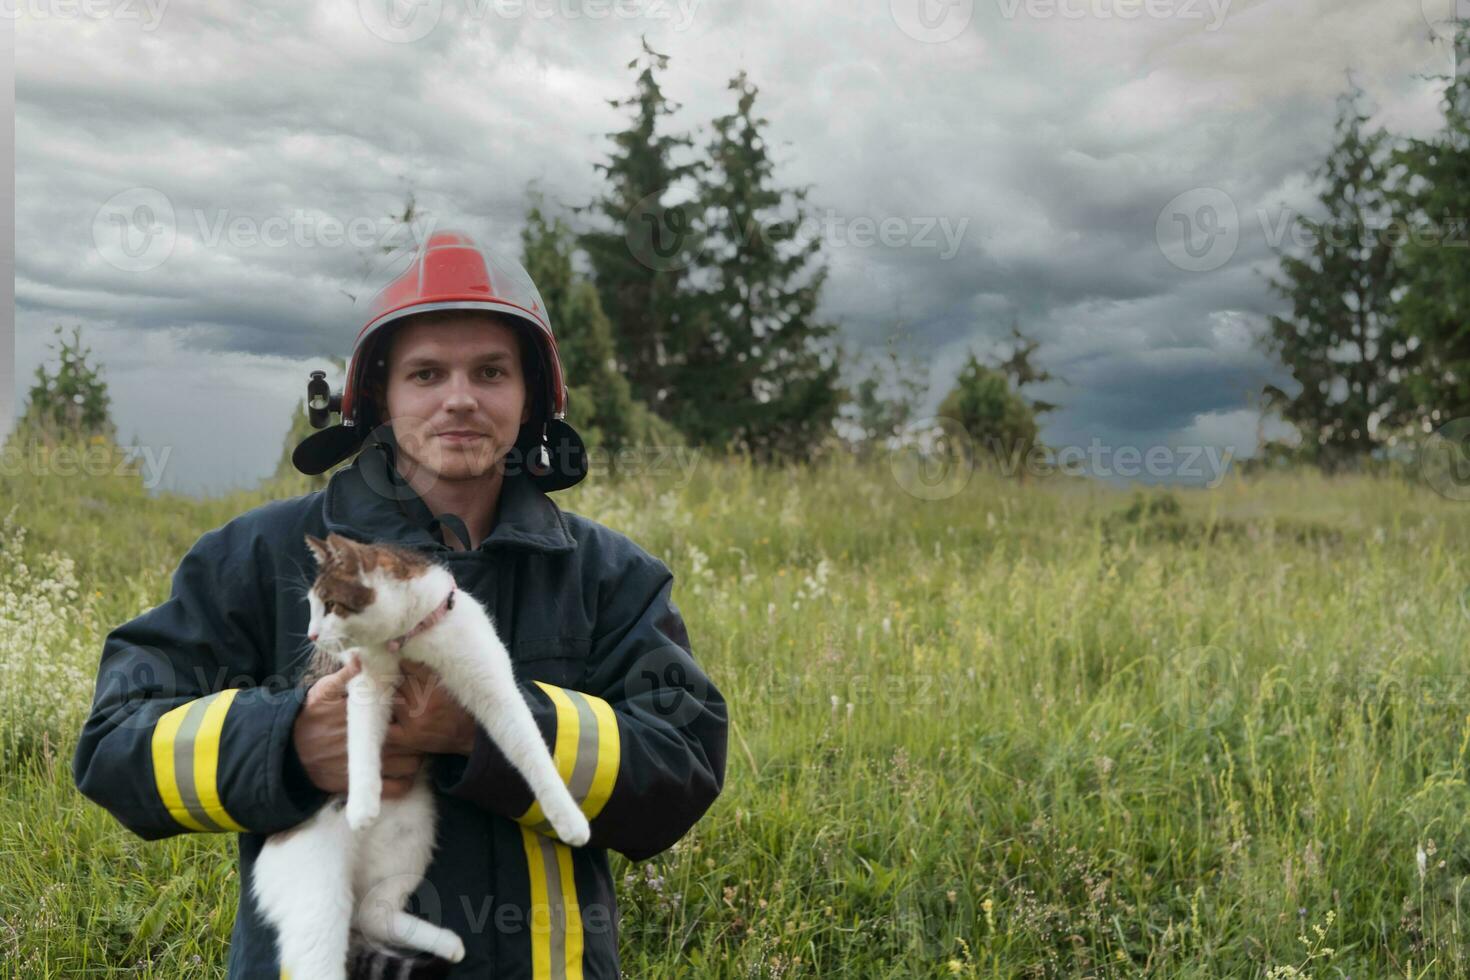 de cerca retrato de heroico bombero en protector traje y rojo casco sostiene salvado gato en su brazos. bombero en fuego luchando operación. foto